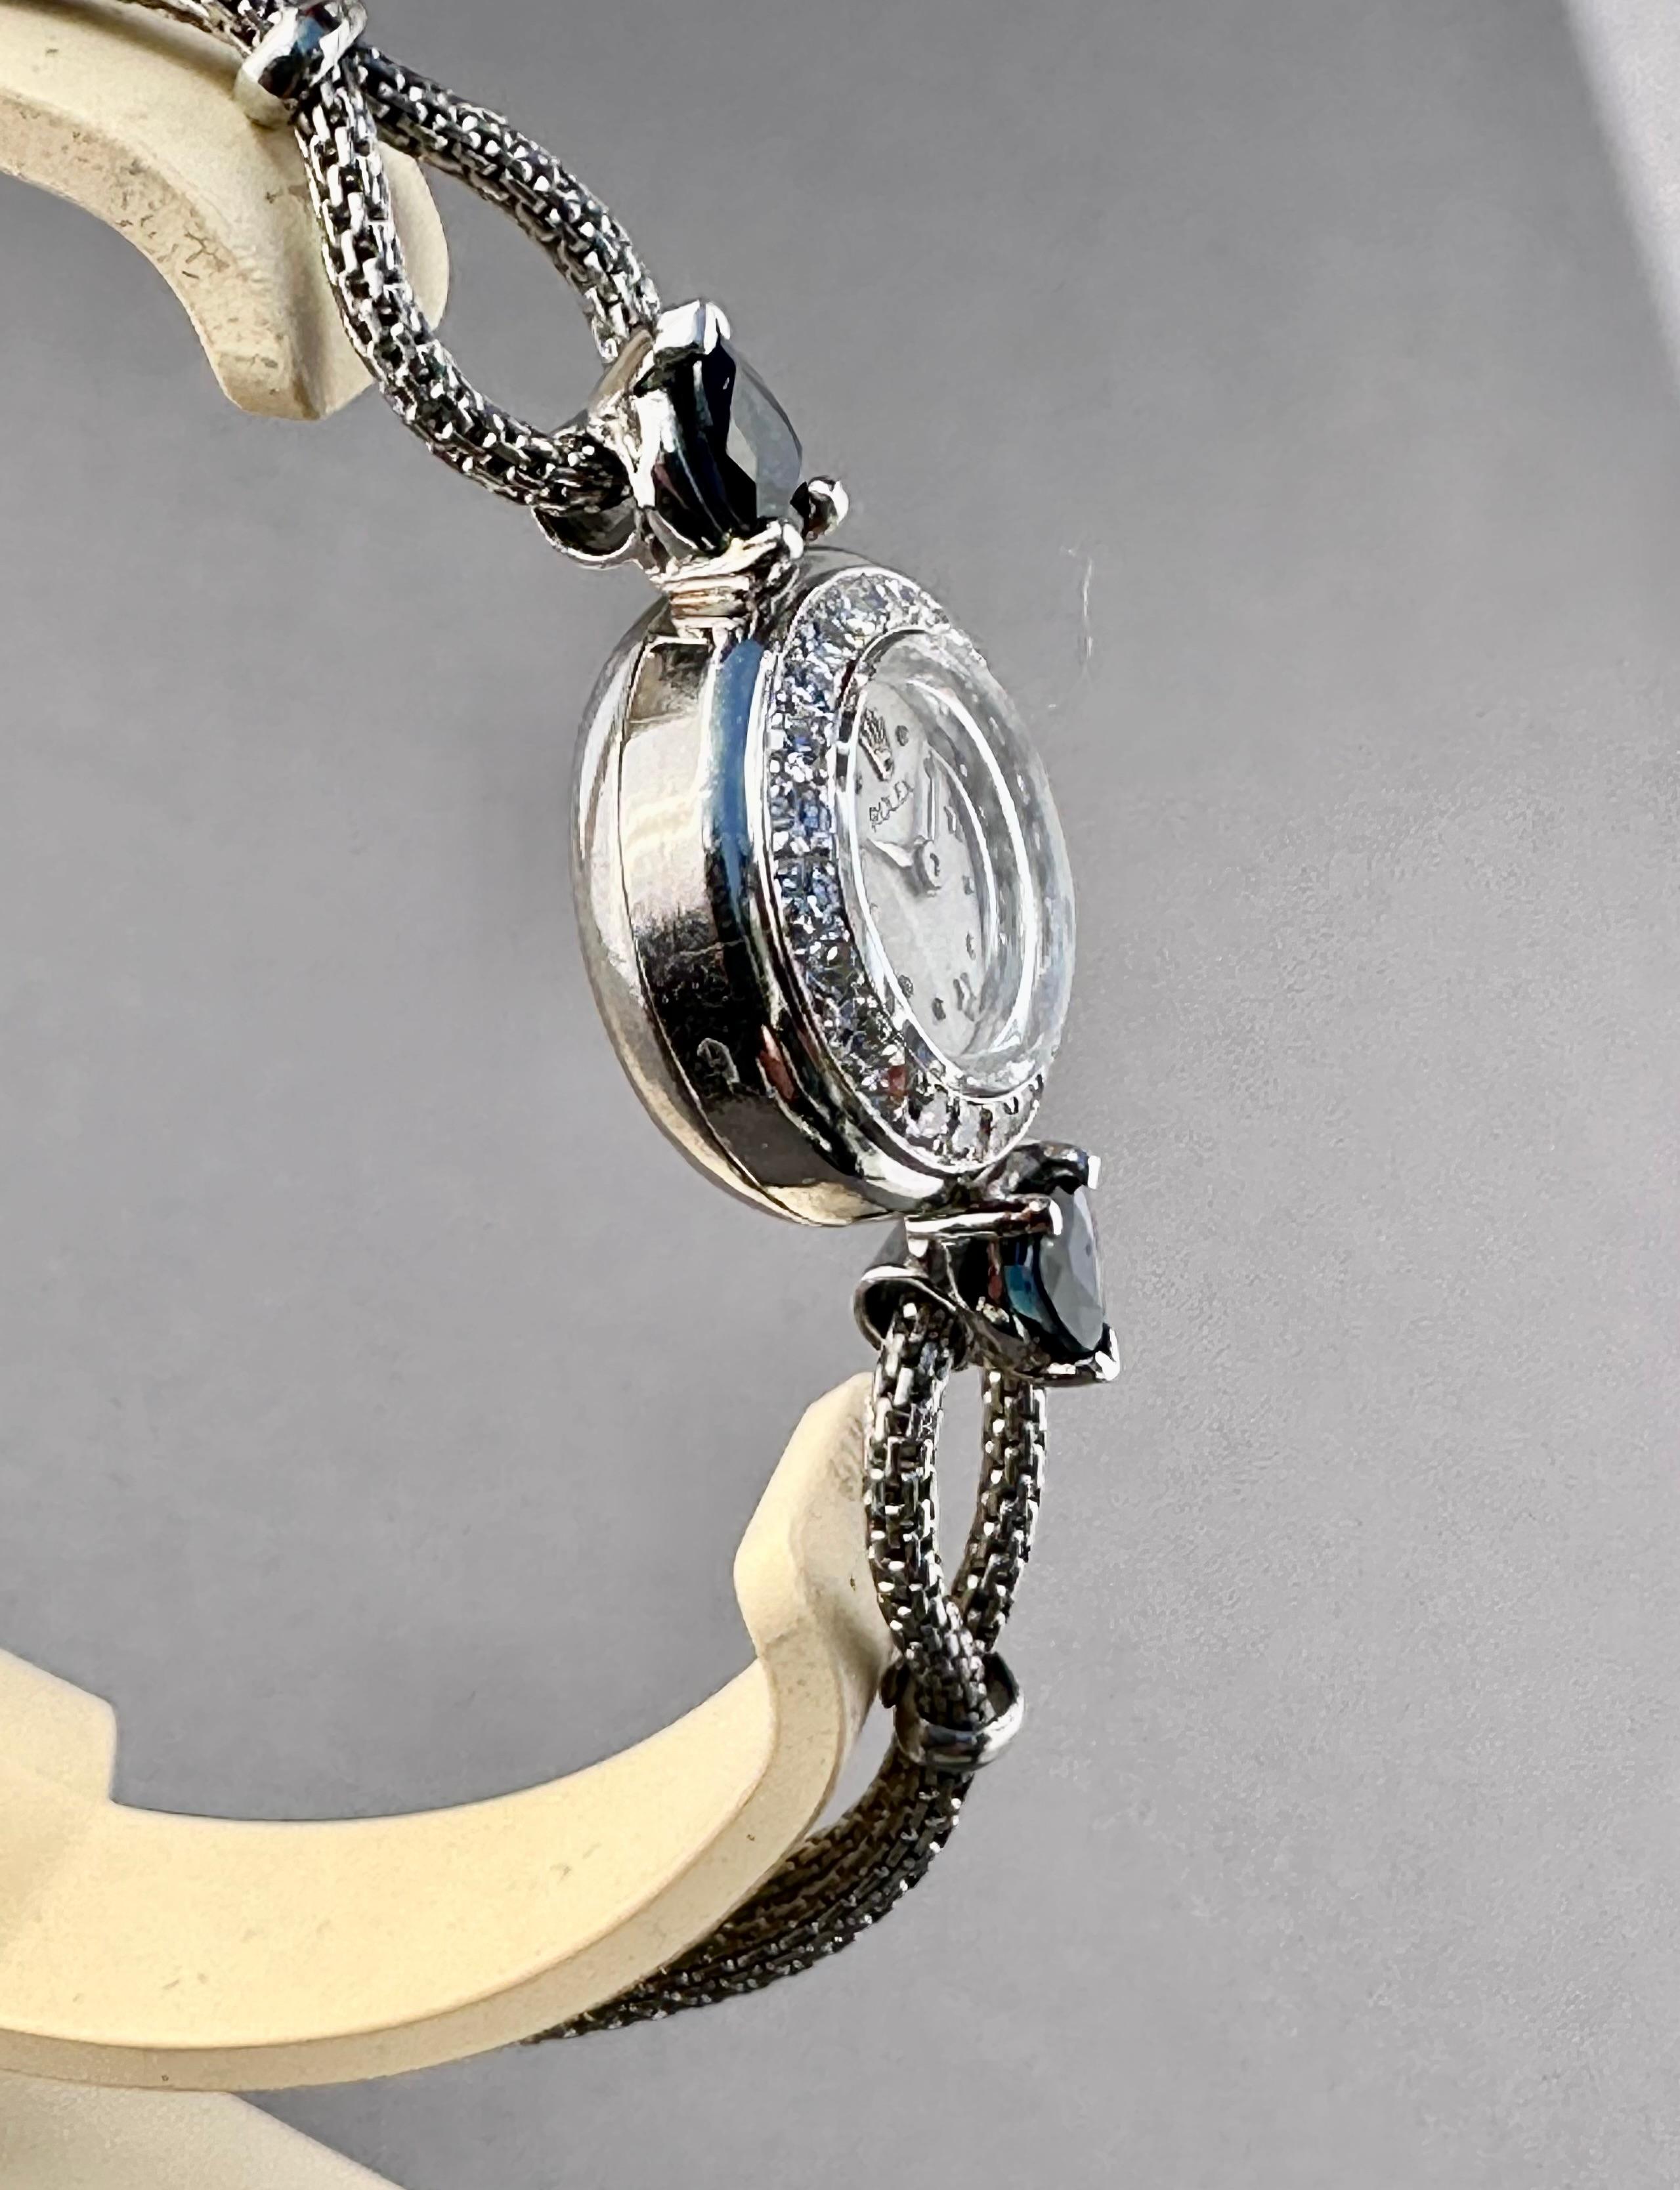 Rolex Precision 1940er Jahre Vintage Platin „Star Dial“ Damenuhr Extrem selten

Vintage Ladies Rolex Diamond & Platinum Watch - Mechanisches Uhrwerk. Platingehäuse mit Diamantlünette (16 mm). Silber/Weißes Zifferblatt mit Punkt und